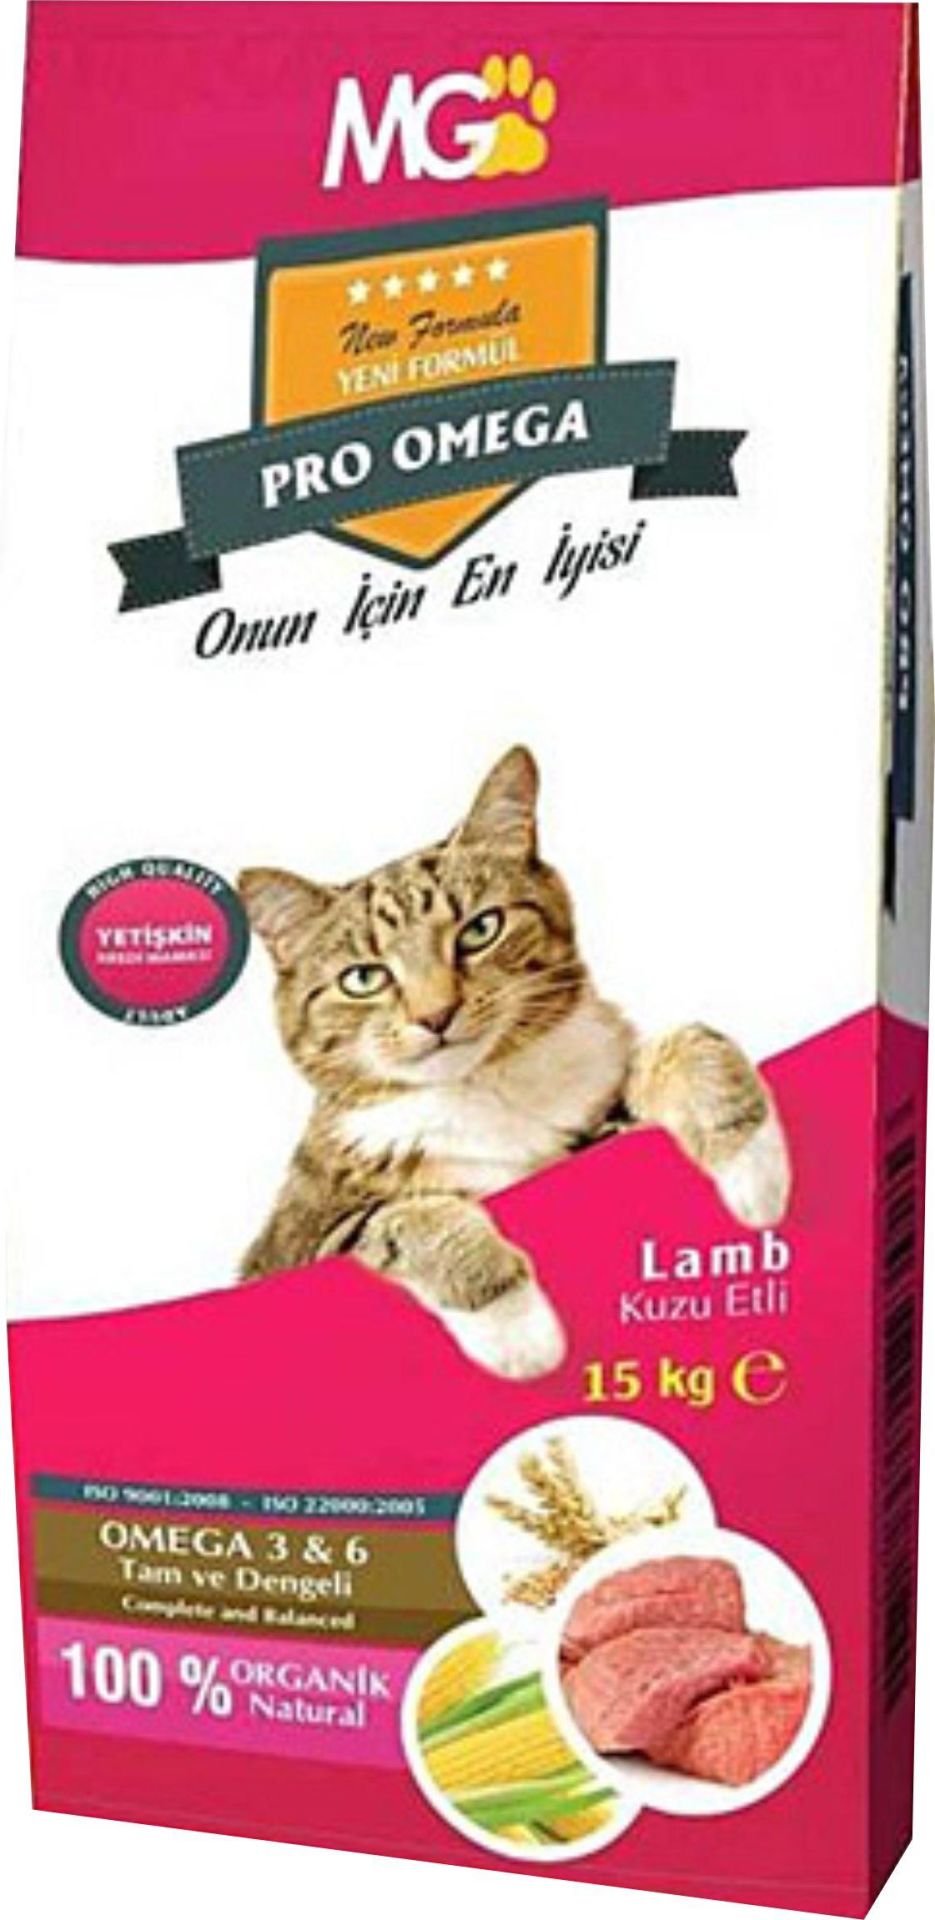 Pro Omega Kuzu Etli Yetişkin Kedi Maması 15 Kg